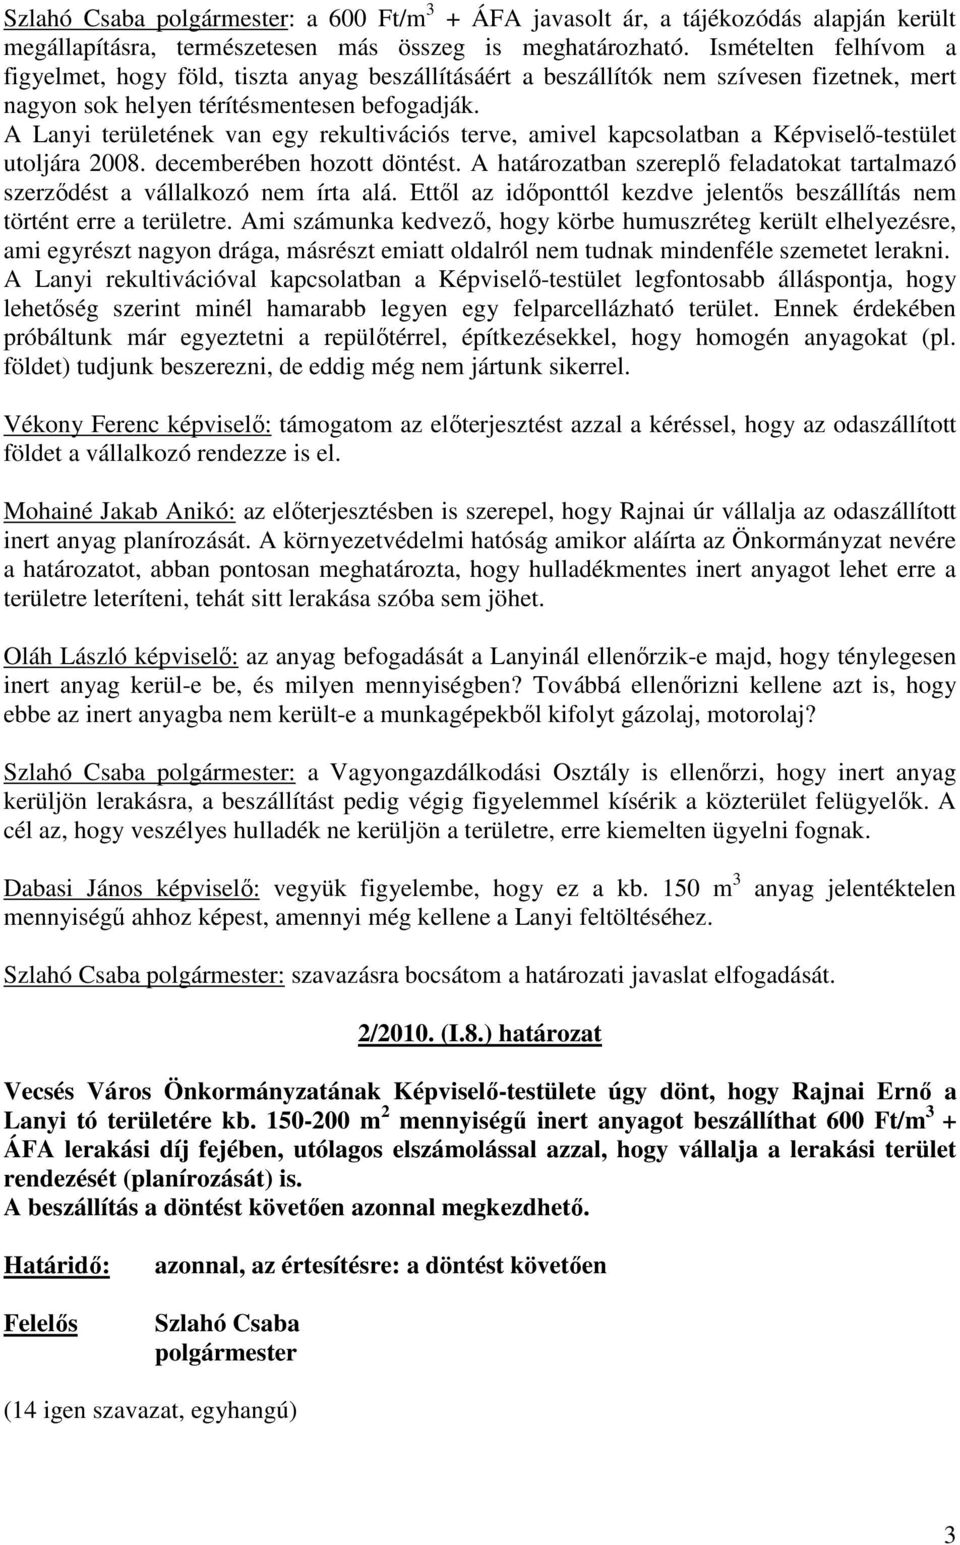 A Lanyi területének van egy rekultivációs terve, amivel kapcsolatban a Képviselı-testület utoljára 2008. decemberében hozott döntést.